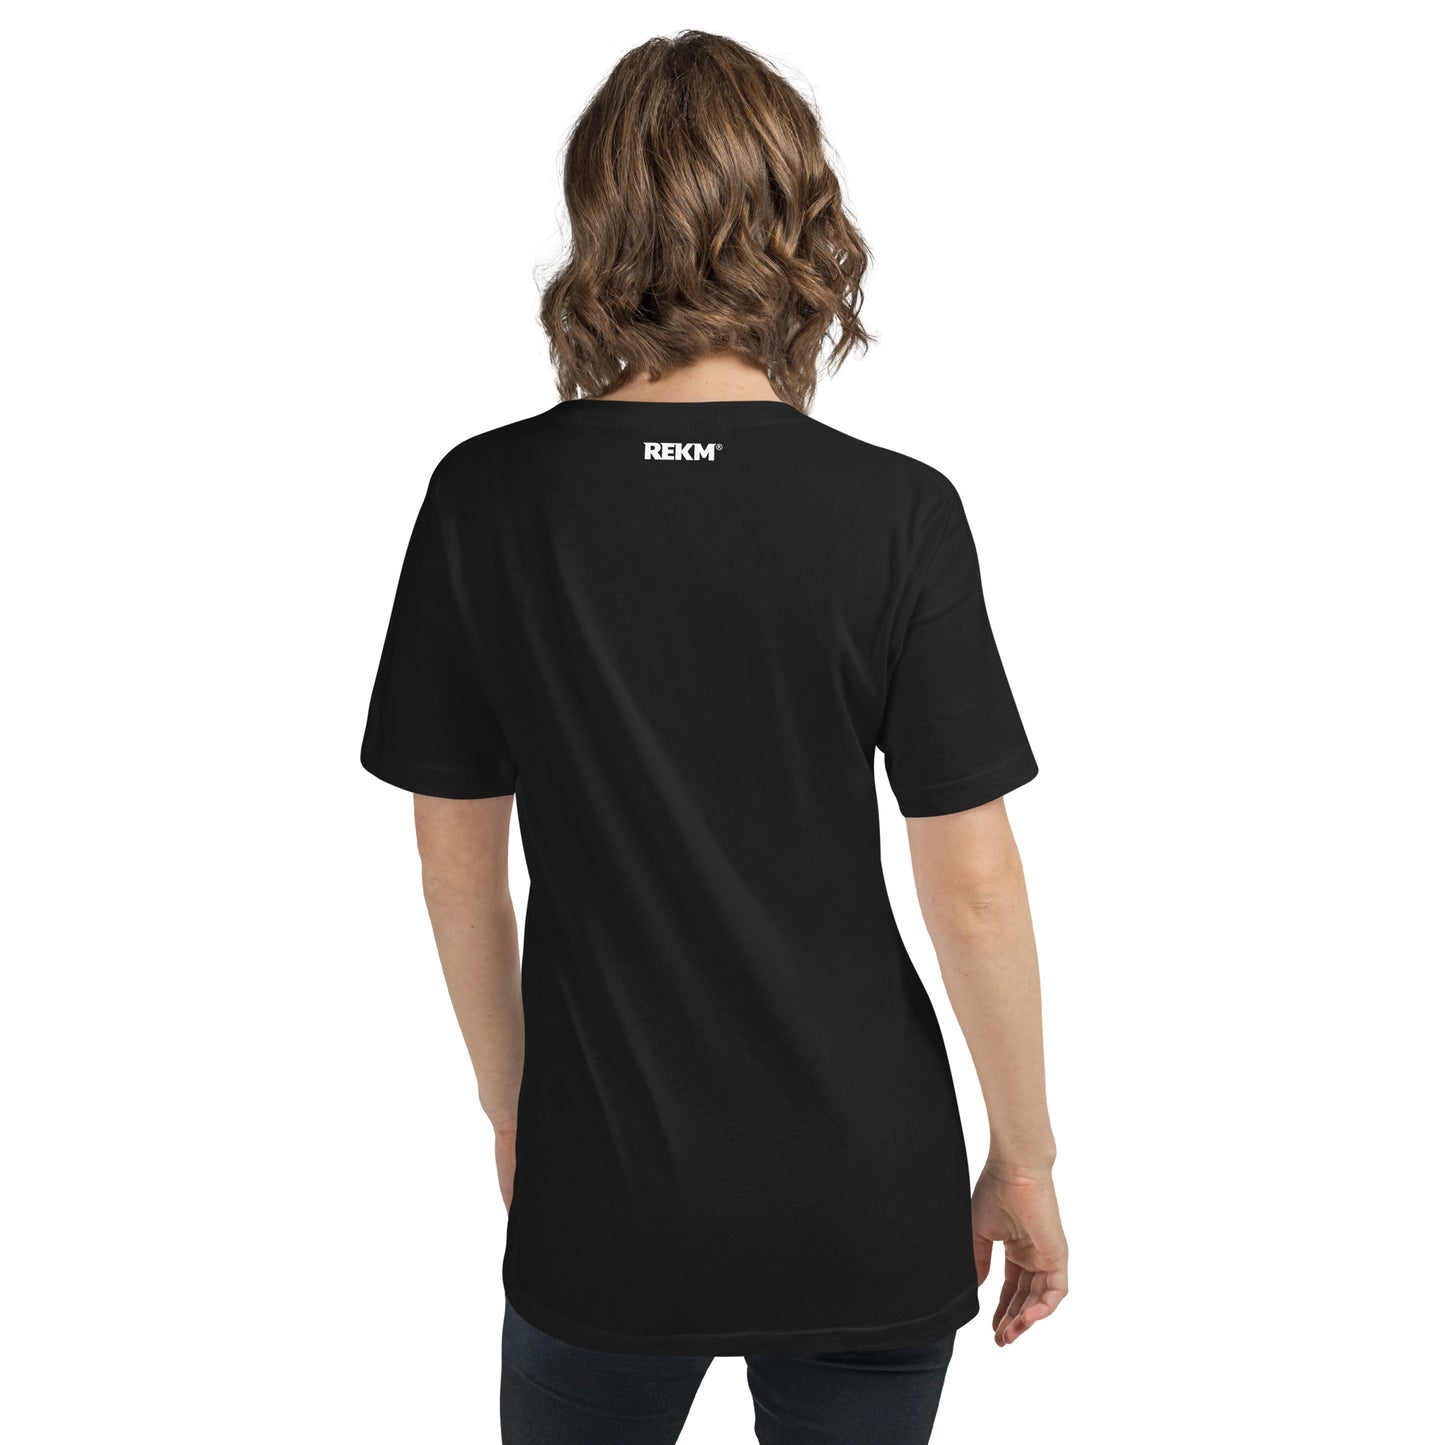 Israeli Ju-Jitsu Unisex Short Sleeve V-Neck T-Shirt